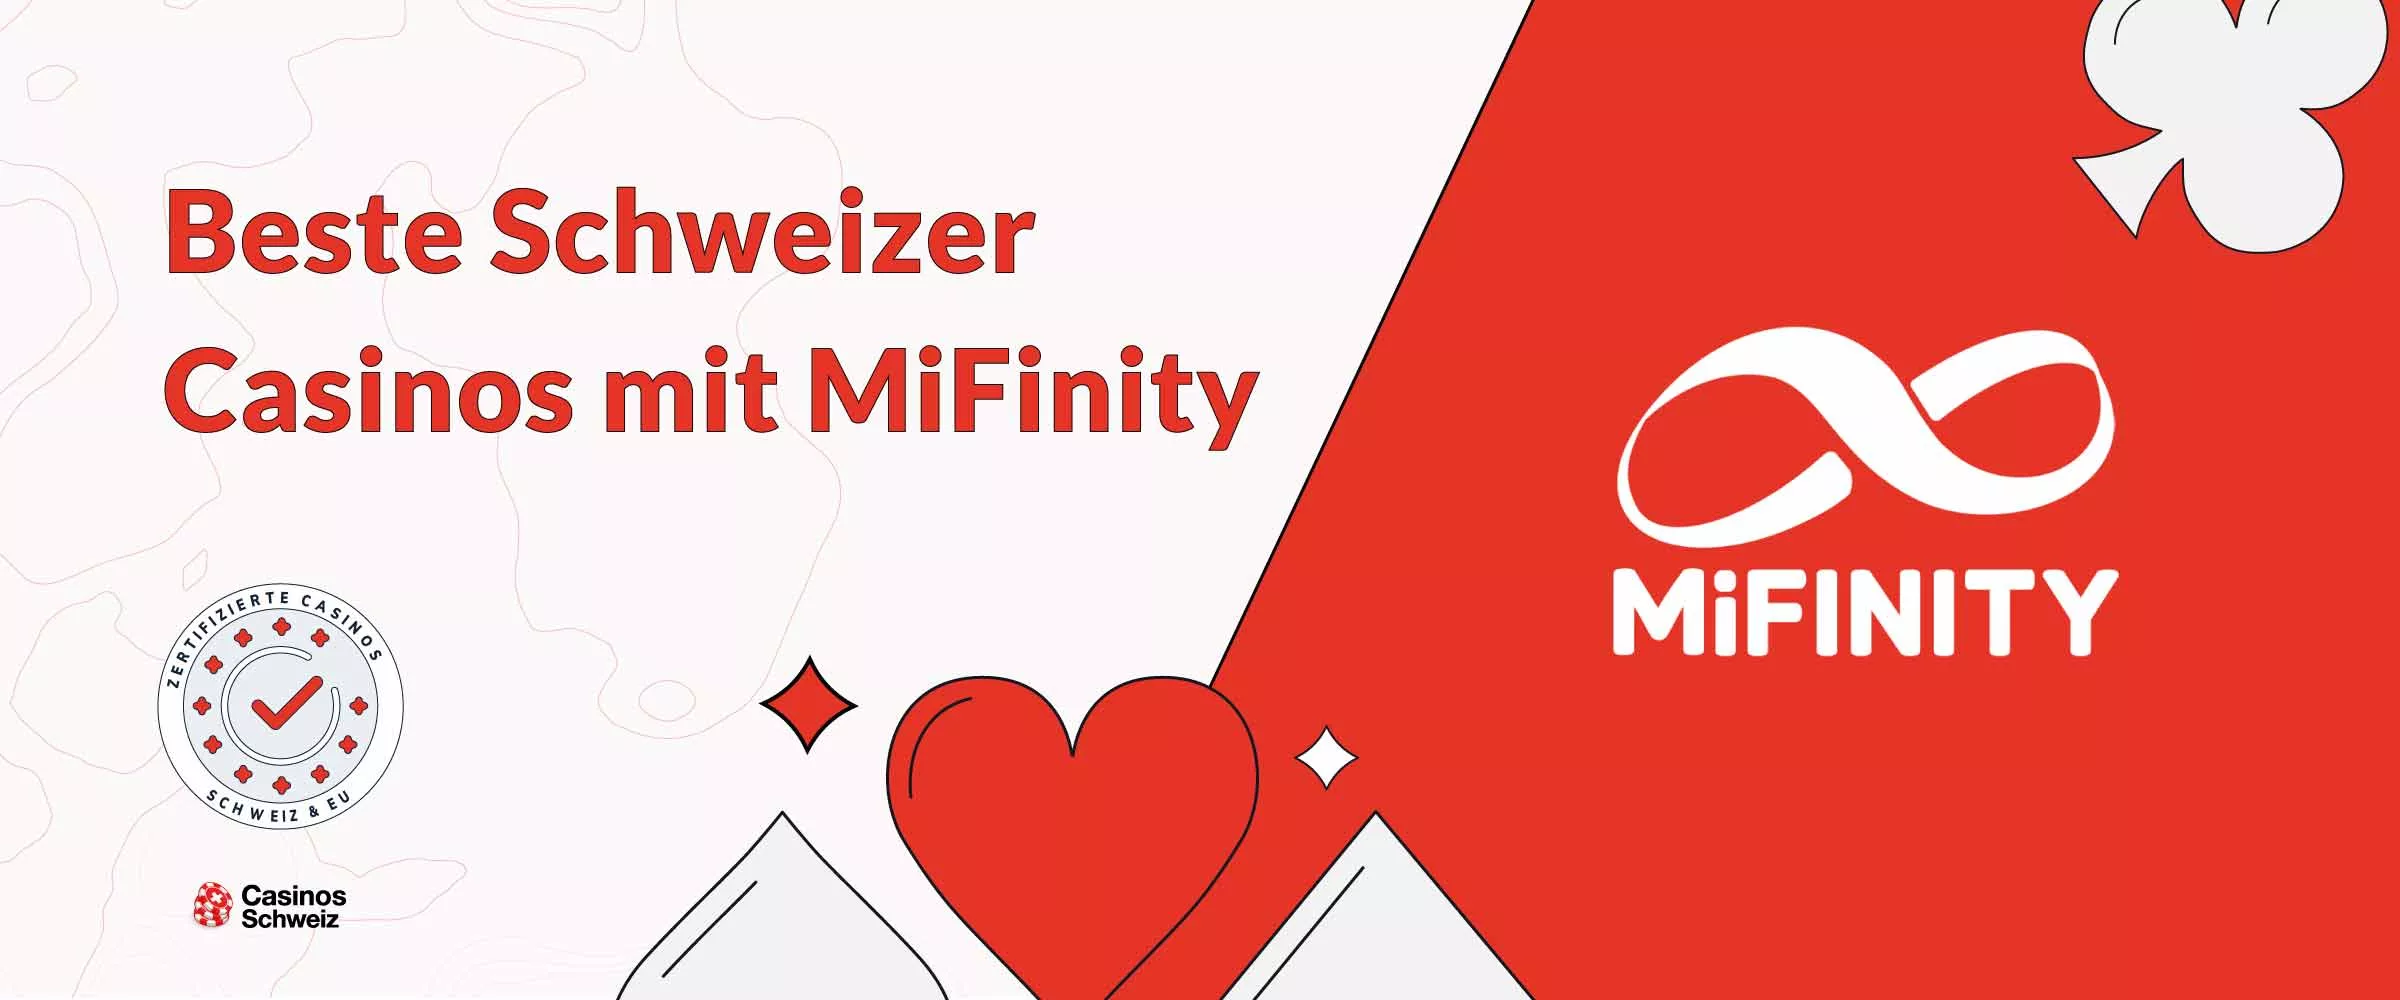 Beste Schweizer Casinos Mifinity